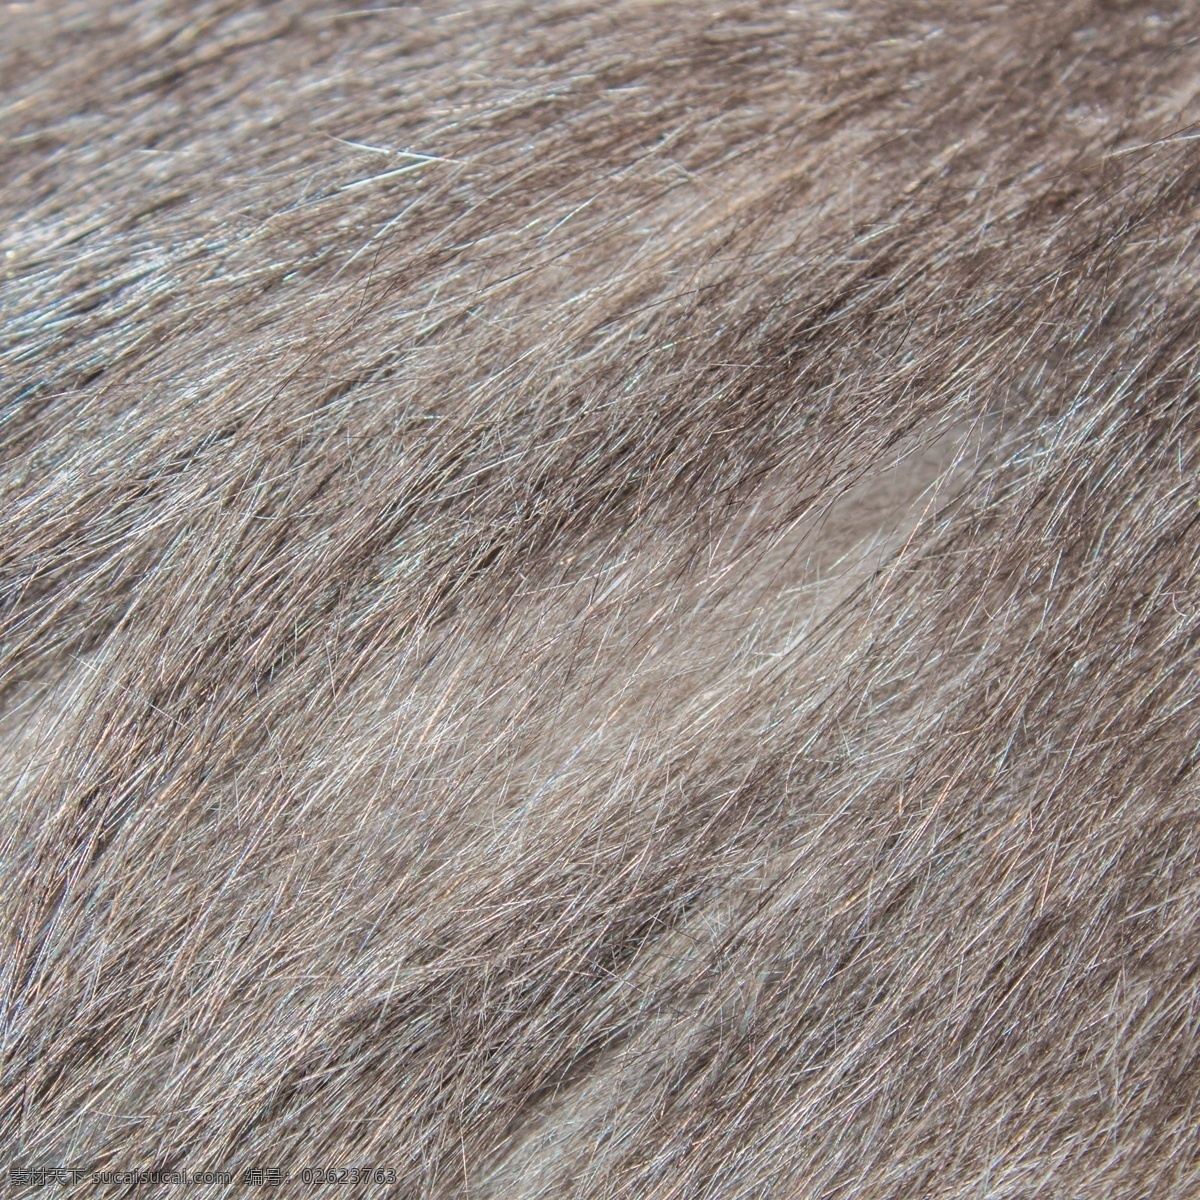 动物 毛发 细节 图 实拍 动物皮毛 动物毛发实拍 棕色 爱护动物 野生 中年动物毛发